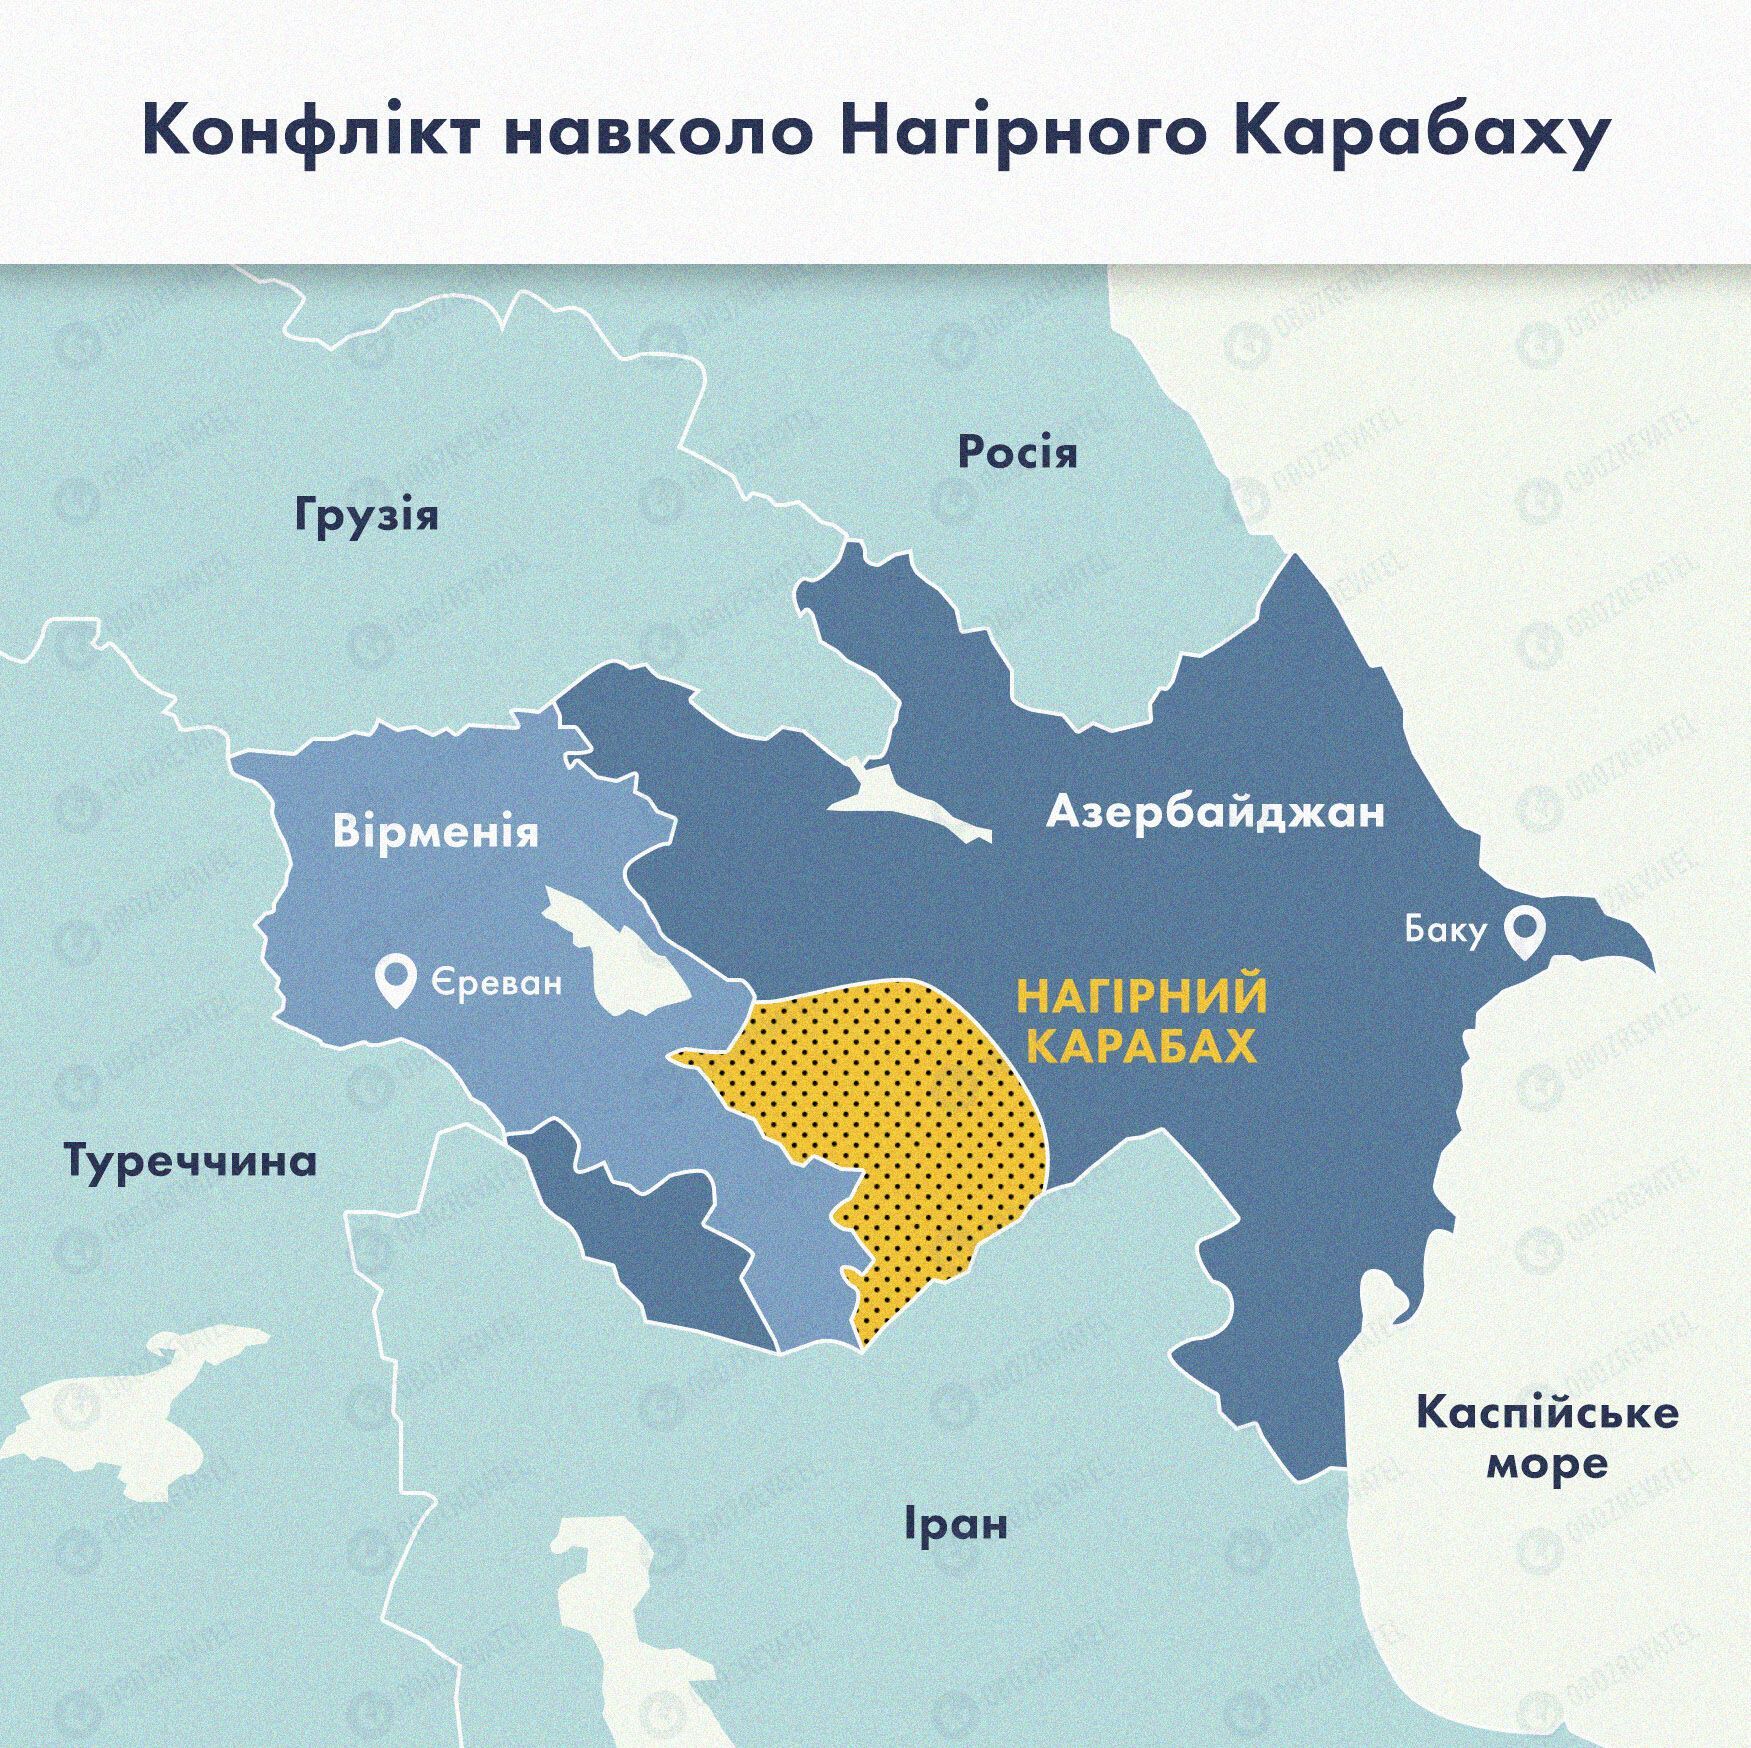 Конфлікт навколо Нагірного Карабаху